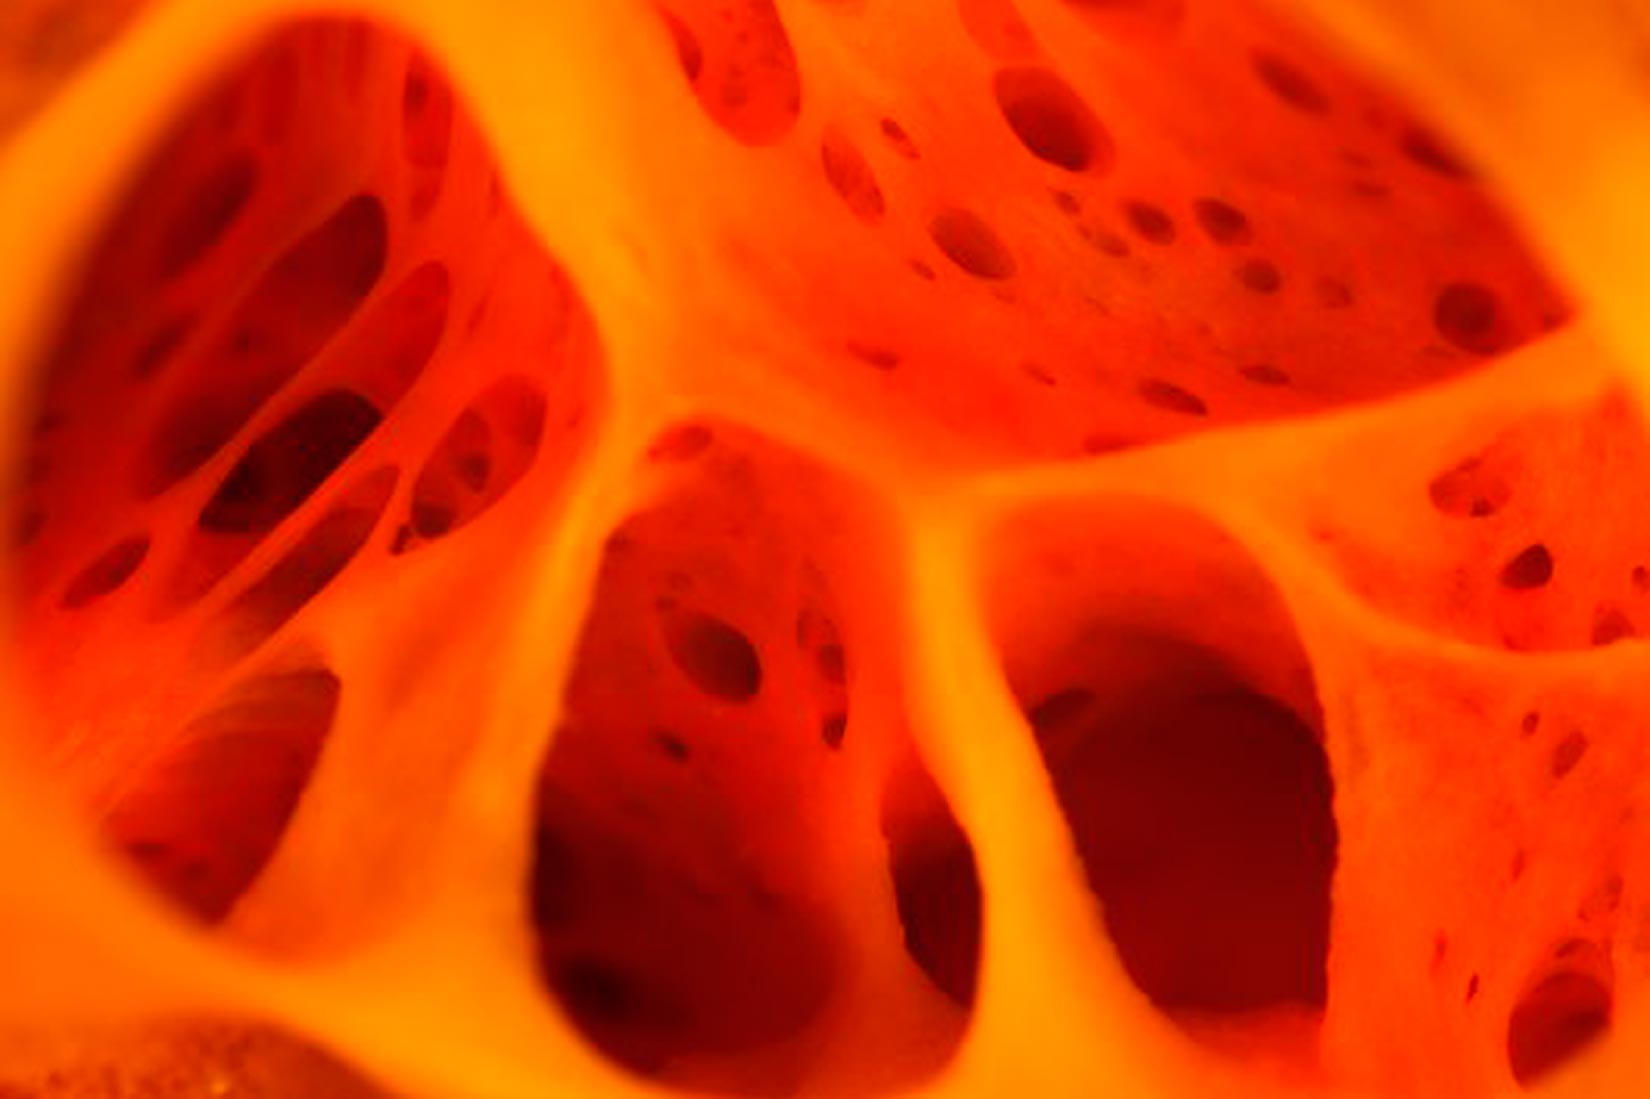 Slika prikazuje unutrašnju šupljinu spužve. Prevladava prigušeno narančasto osvjetljenje, a sama šupljina podsjeća na unutrašnjost djelomično otopljenog, rupičastog švicarskog sira.